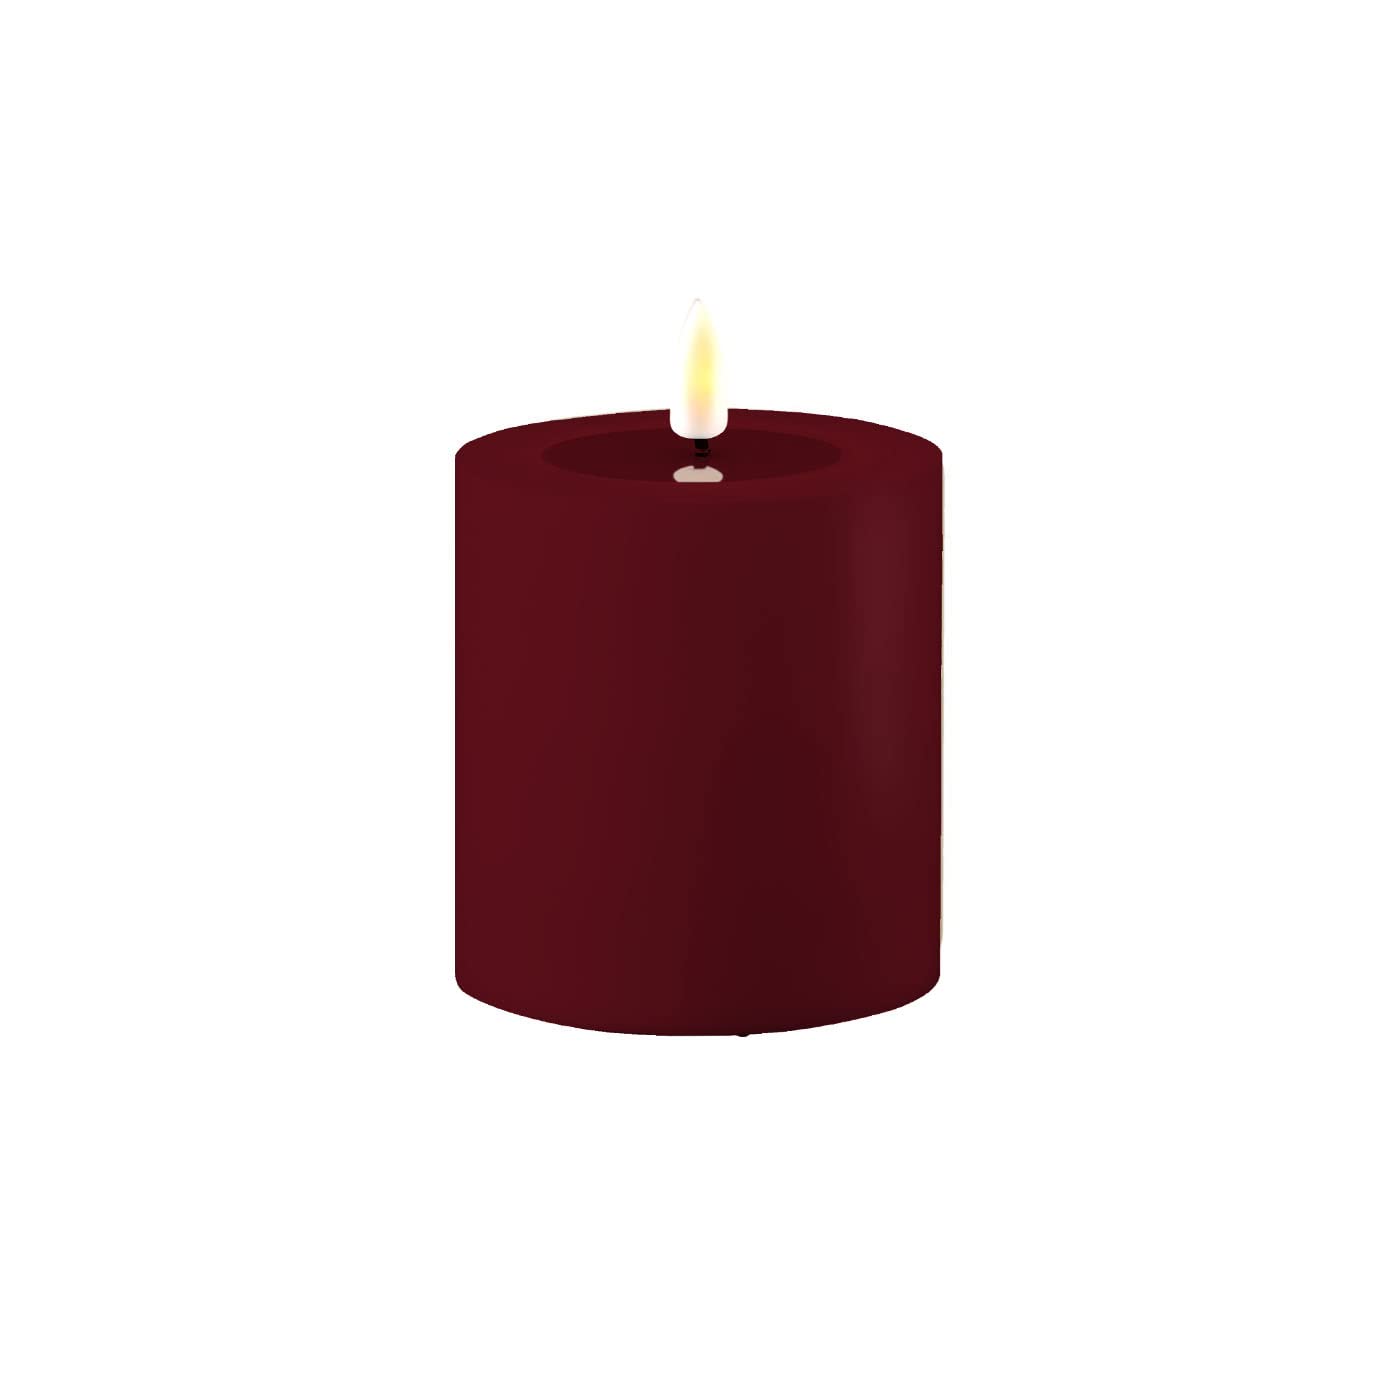 LED Kerze Deluxe Homeart, Outdoor LED Kerze (Kunststoff – Kein Echtwachs) mit realistischer Flamme, warmweißes Licht, Hitzebeständig für den Aussenbereich– (Bordeaux)